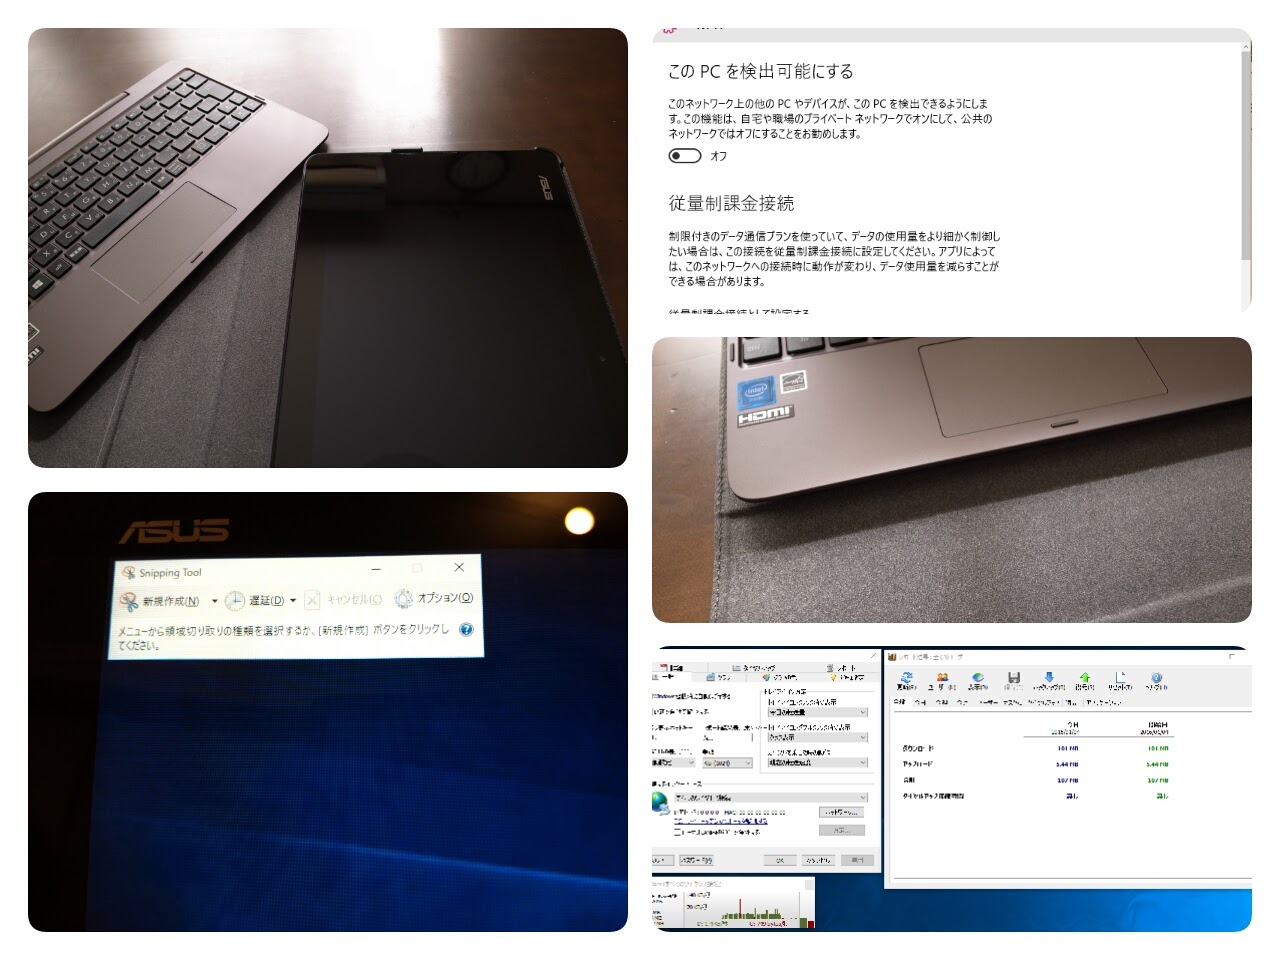 [かぶ] ASUS TransBook T100HA-128S レビュー（Windows 10編）出先で気をつけたいことなど、自分用の覚書。